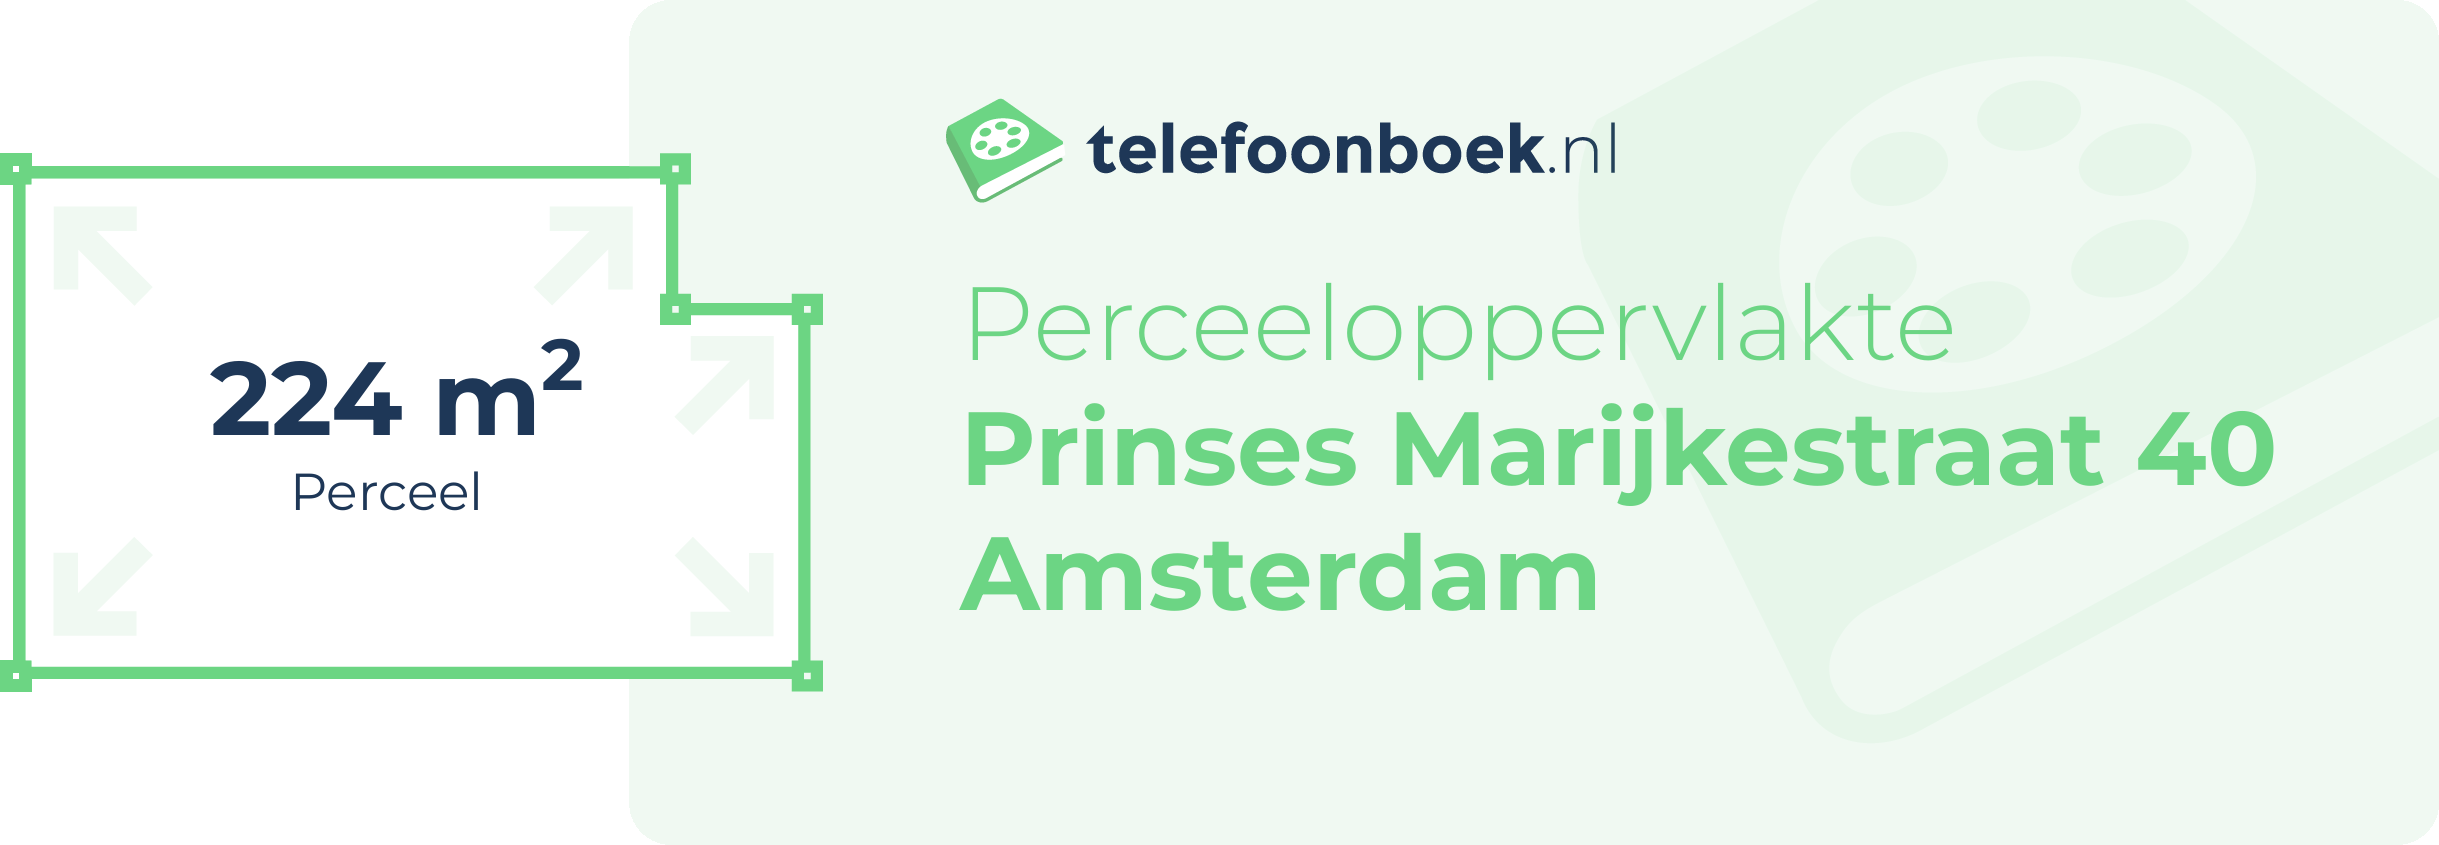 Perceeloppervlakte Prinses Marijkestraat 40 Amsterdam